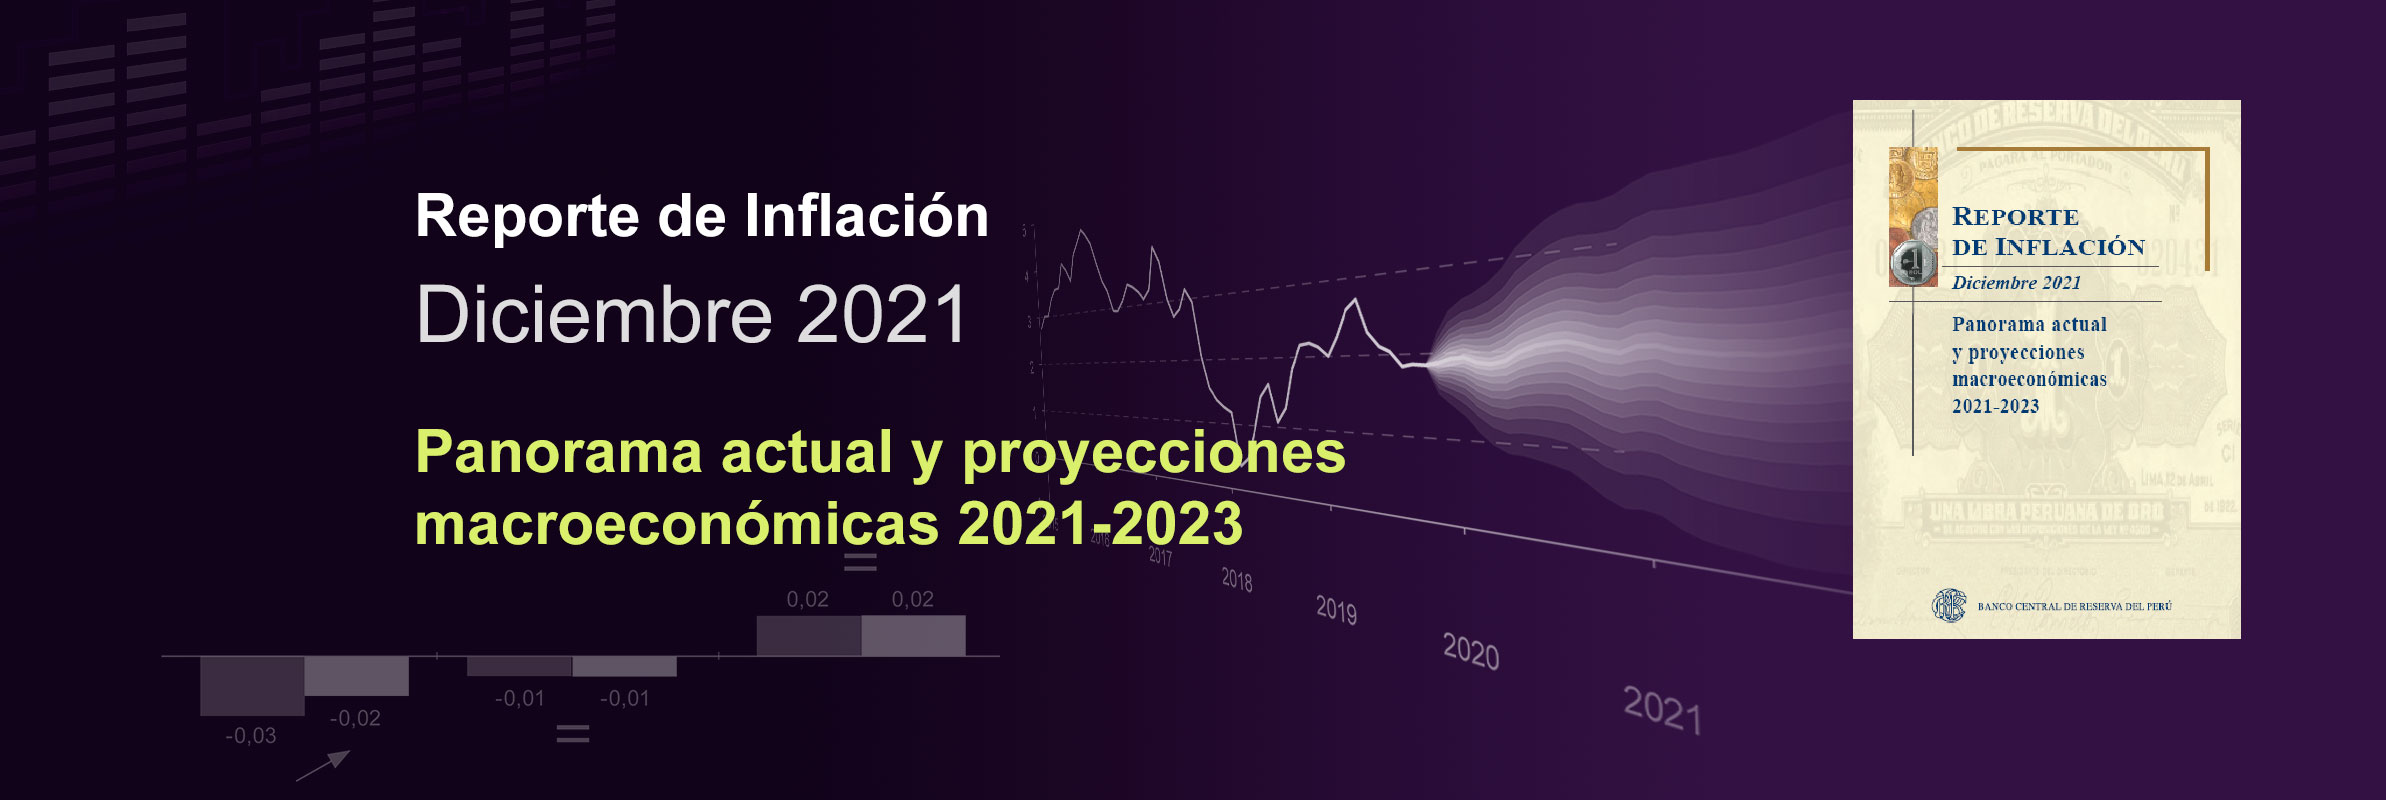 Reporte de Inflación Diciembre 2021: Panorama actual y proyecciones macroeconómicas 2021-2023